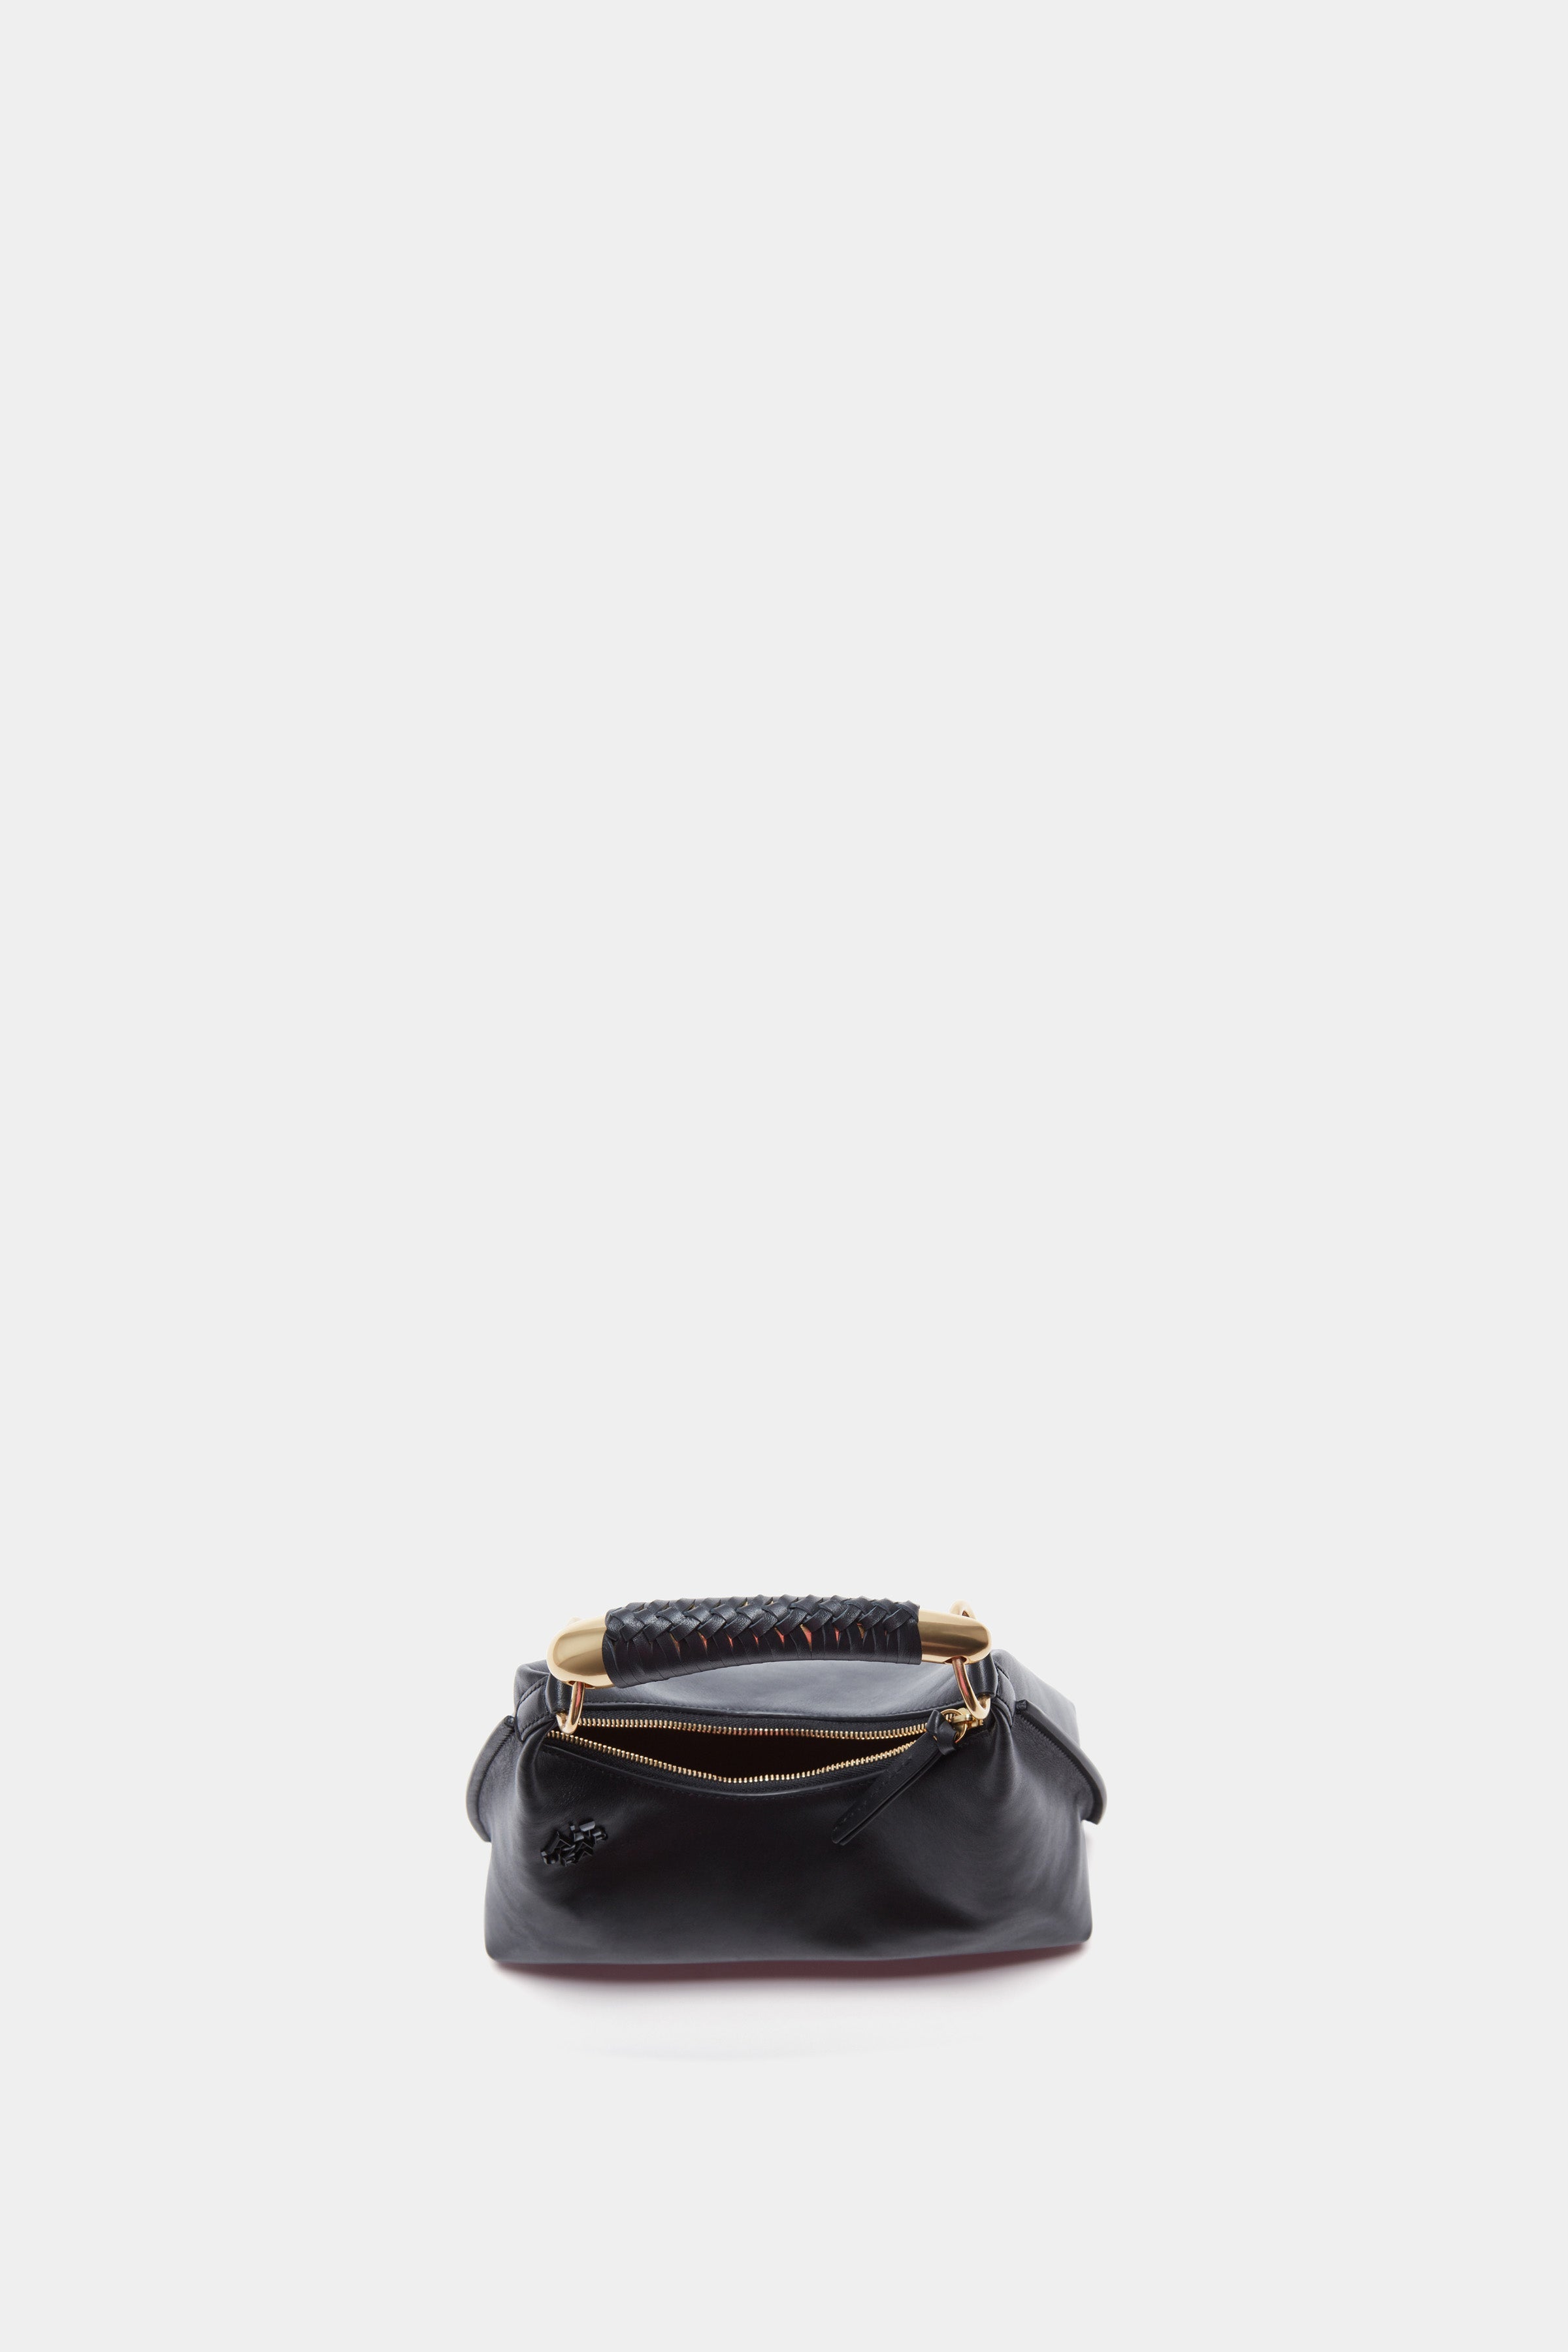 'Athena' Bag Small Black